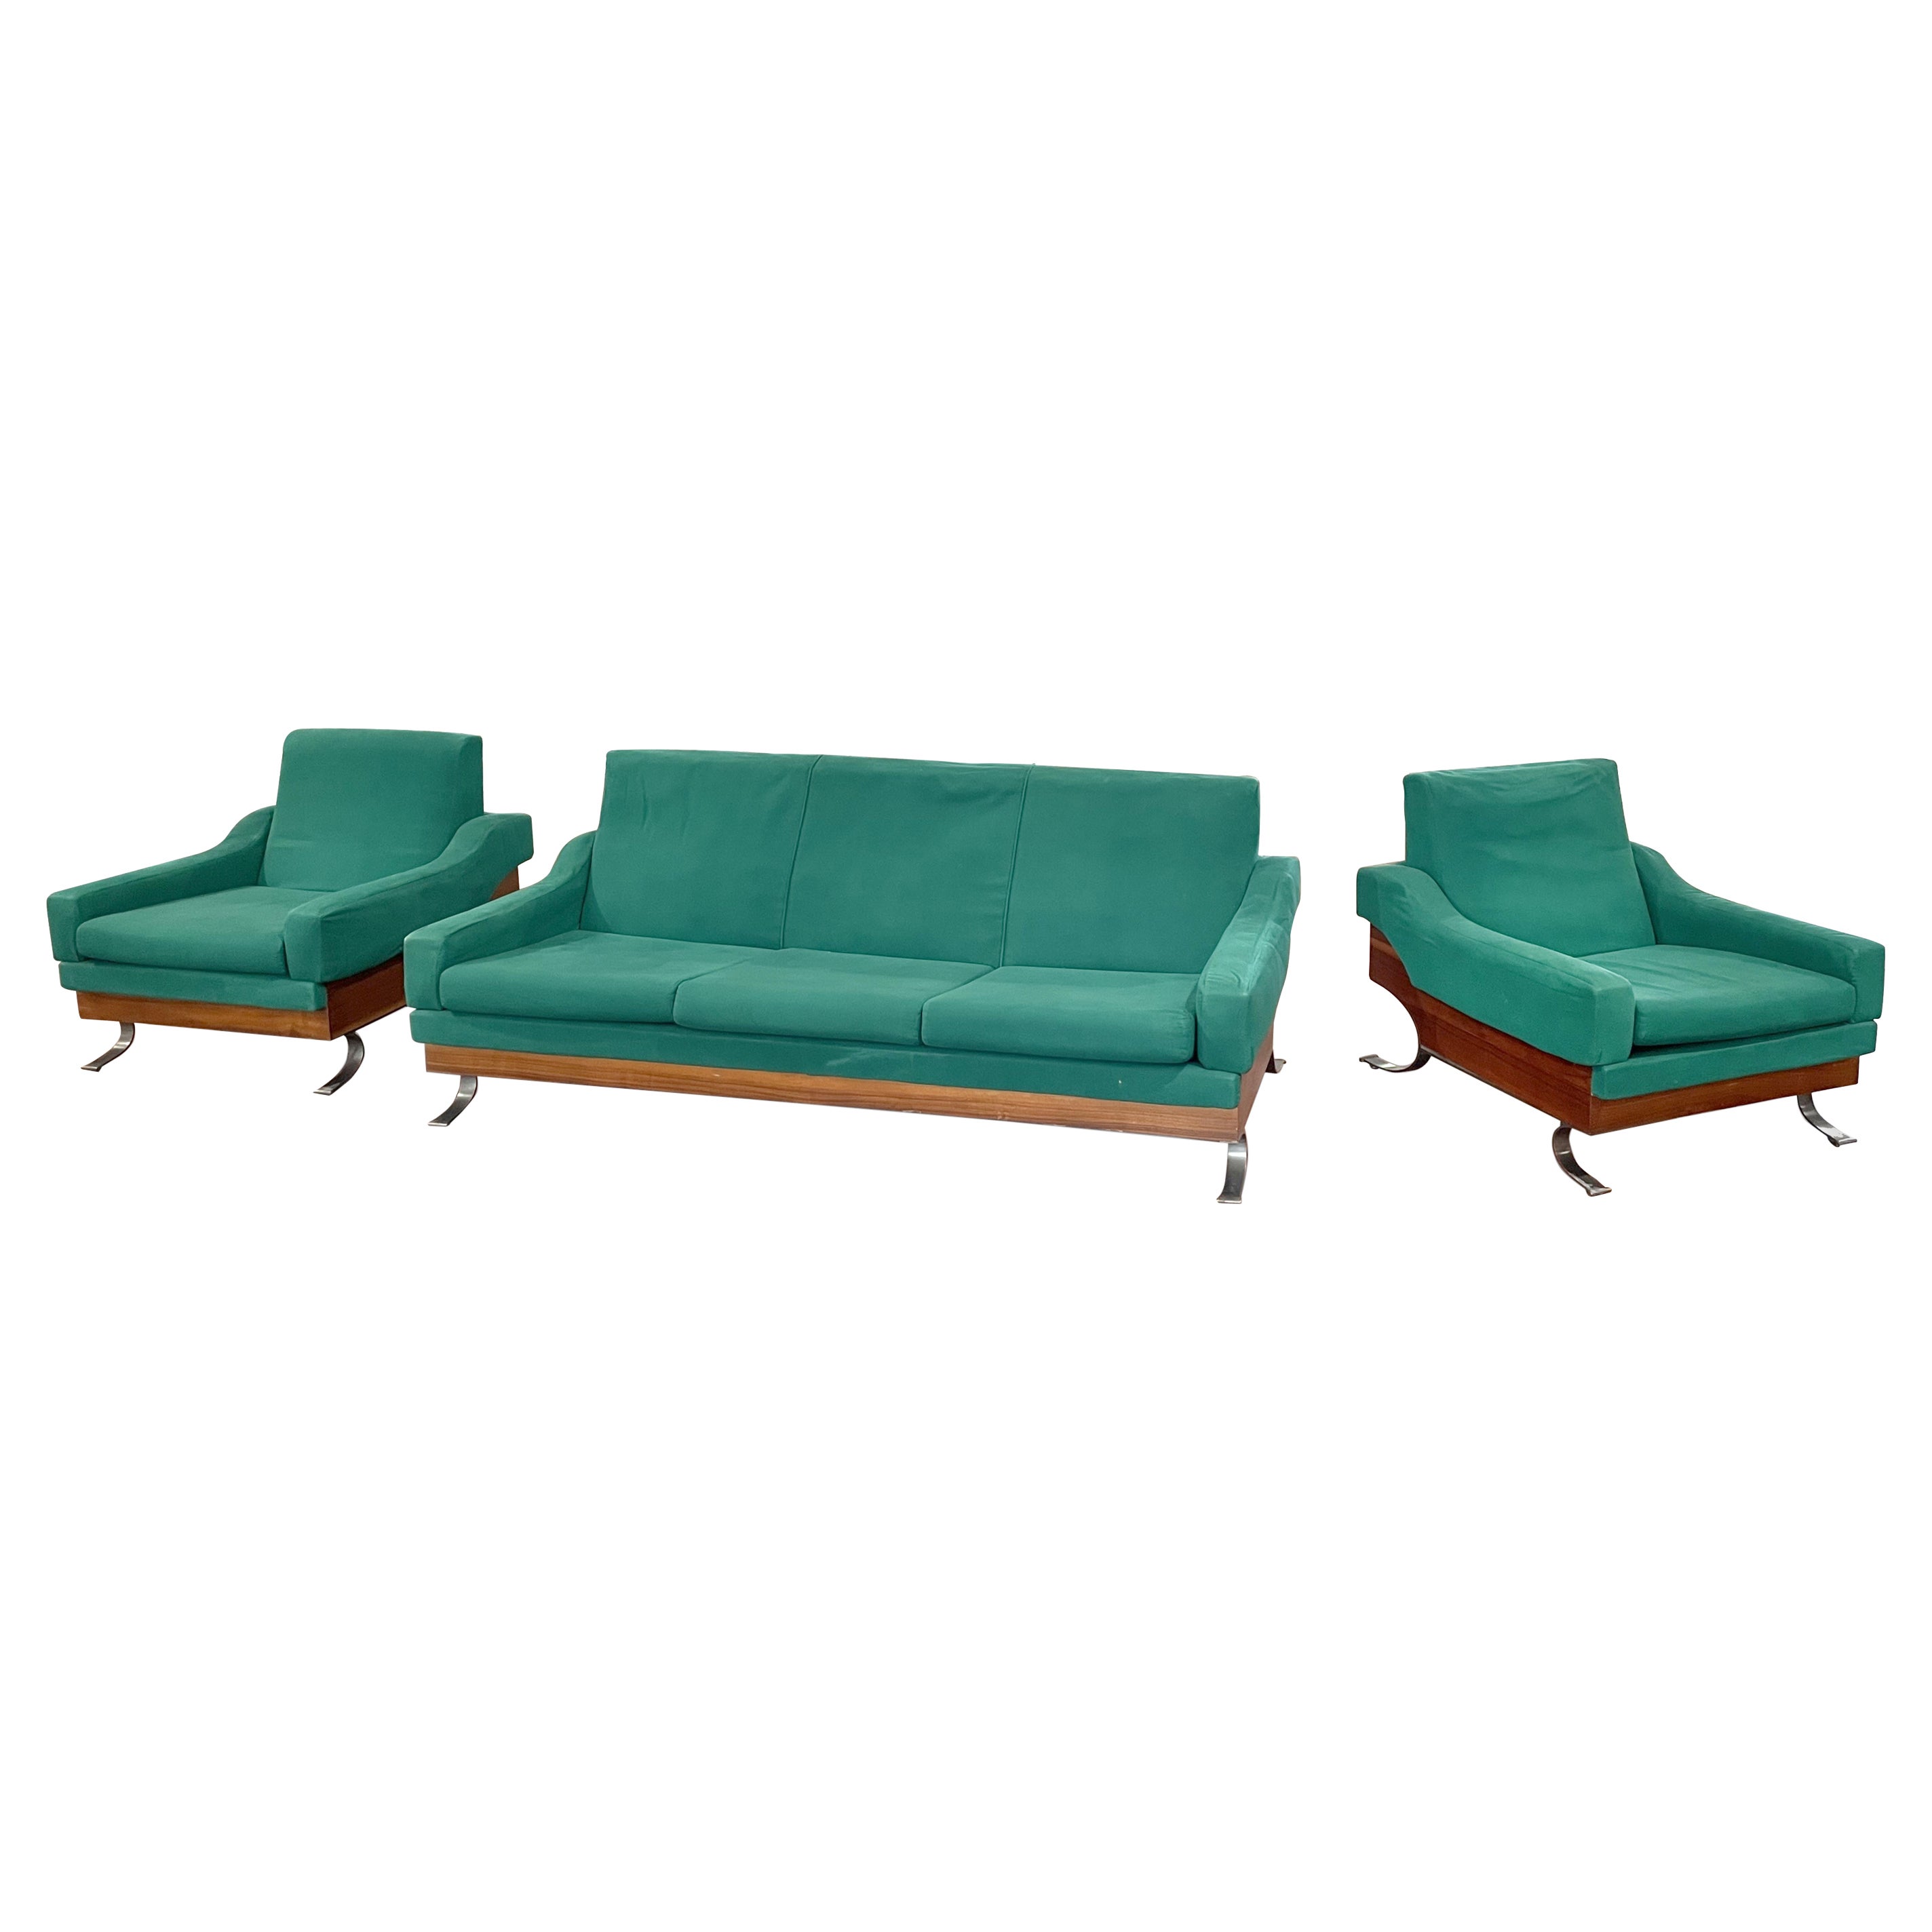 Vintage By Sofa-Set von Saporiti, Italien 1950er Jahre. Original-Polster, sehr selten zu finden in der Reihe Sessel + Sofa.

Sessel je 70 x 84 x 94 cm; Sofa 180x84x94 cm.

Sehr guter Zustand. 